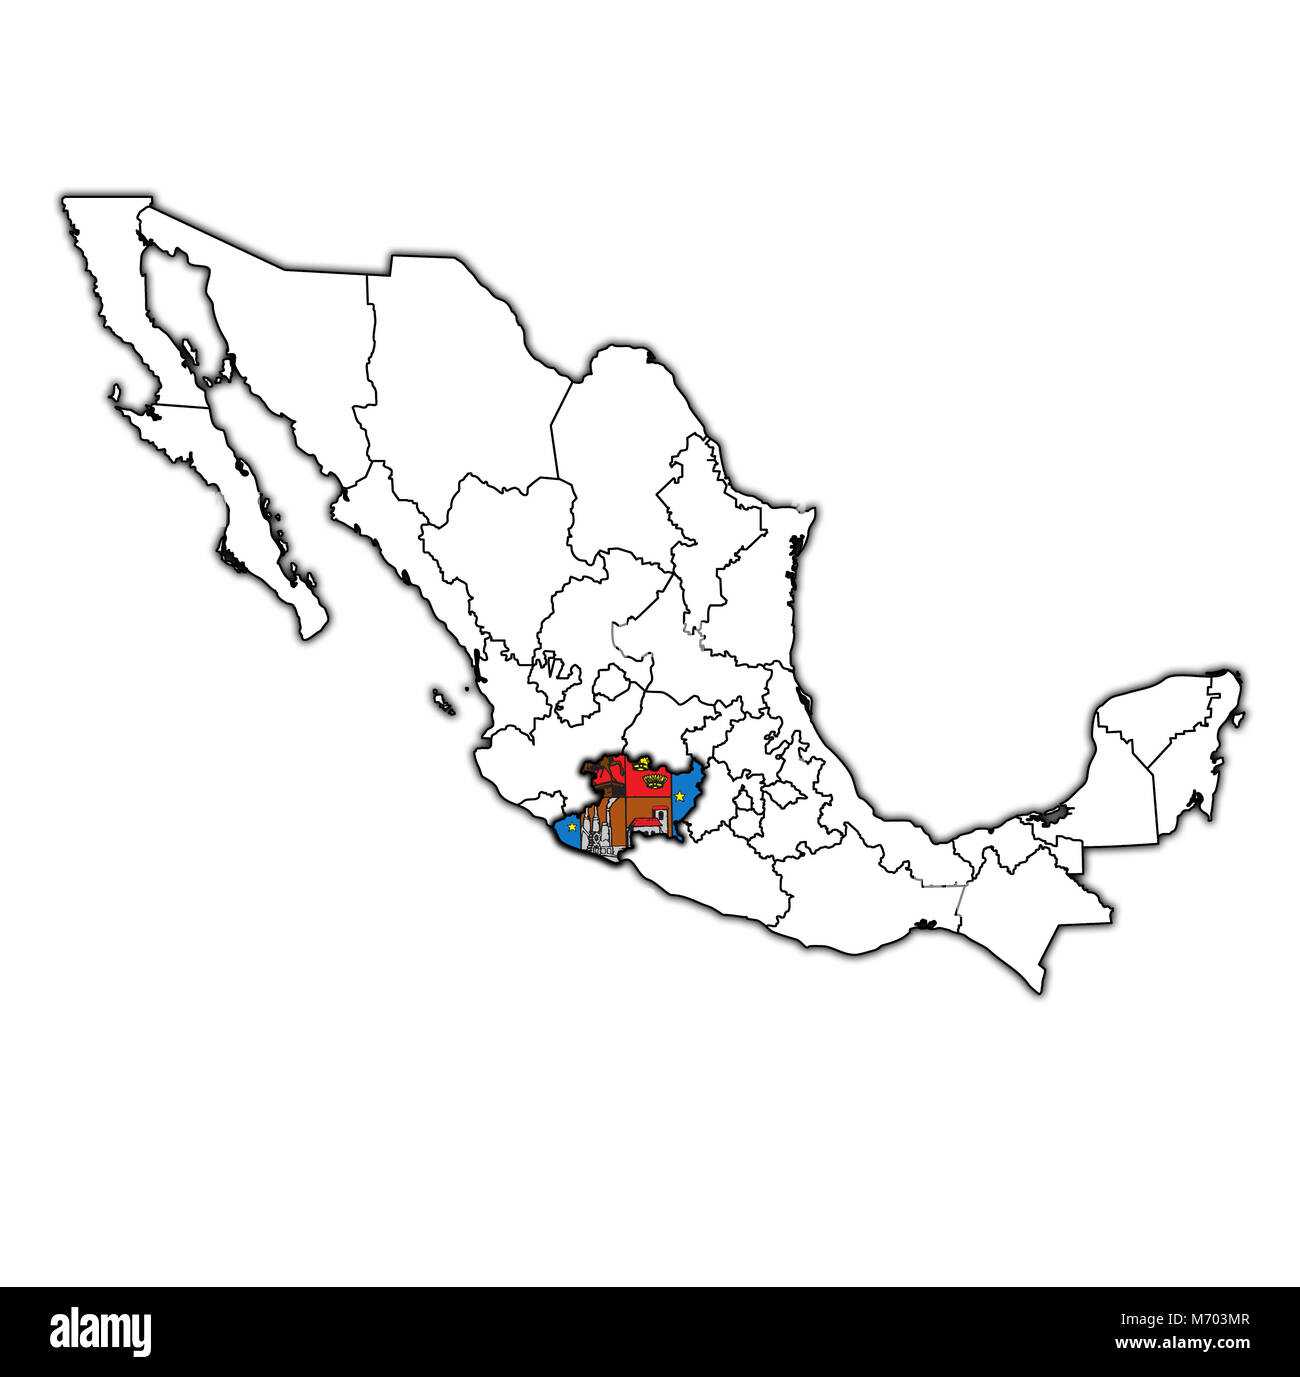 L'emblème de l'état de Michoacan sur plan avec les divisions administratives et les frontières du Mexique Banque D'Images